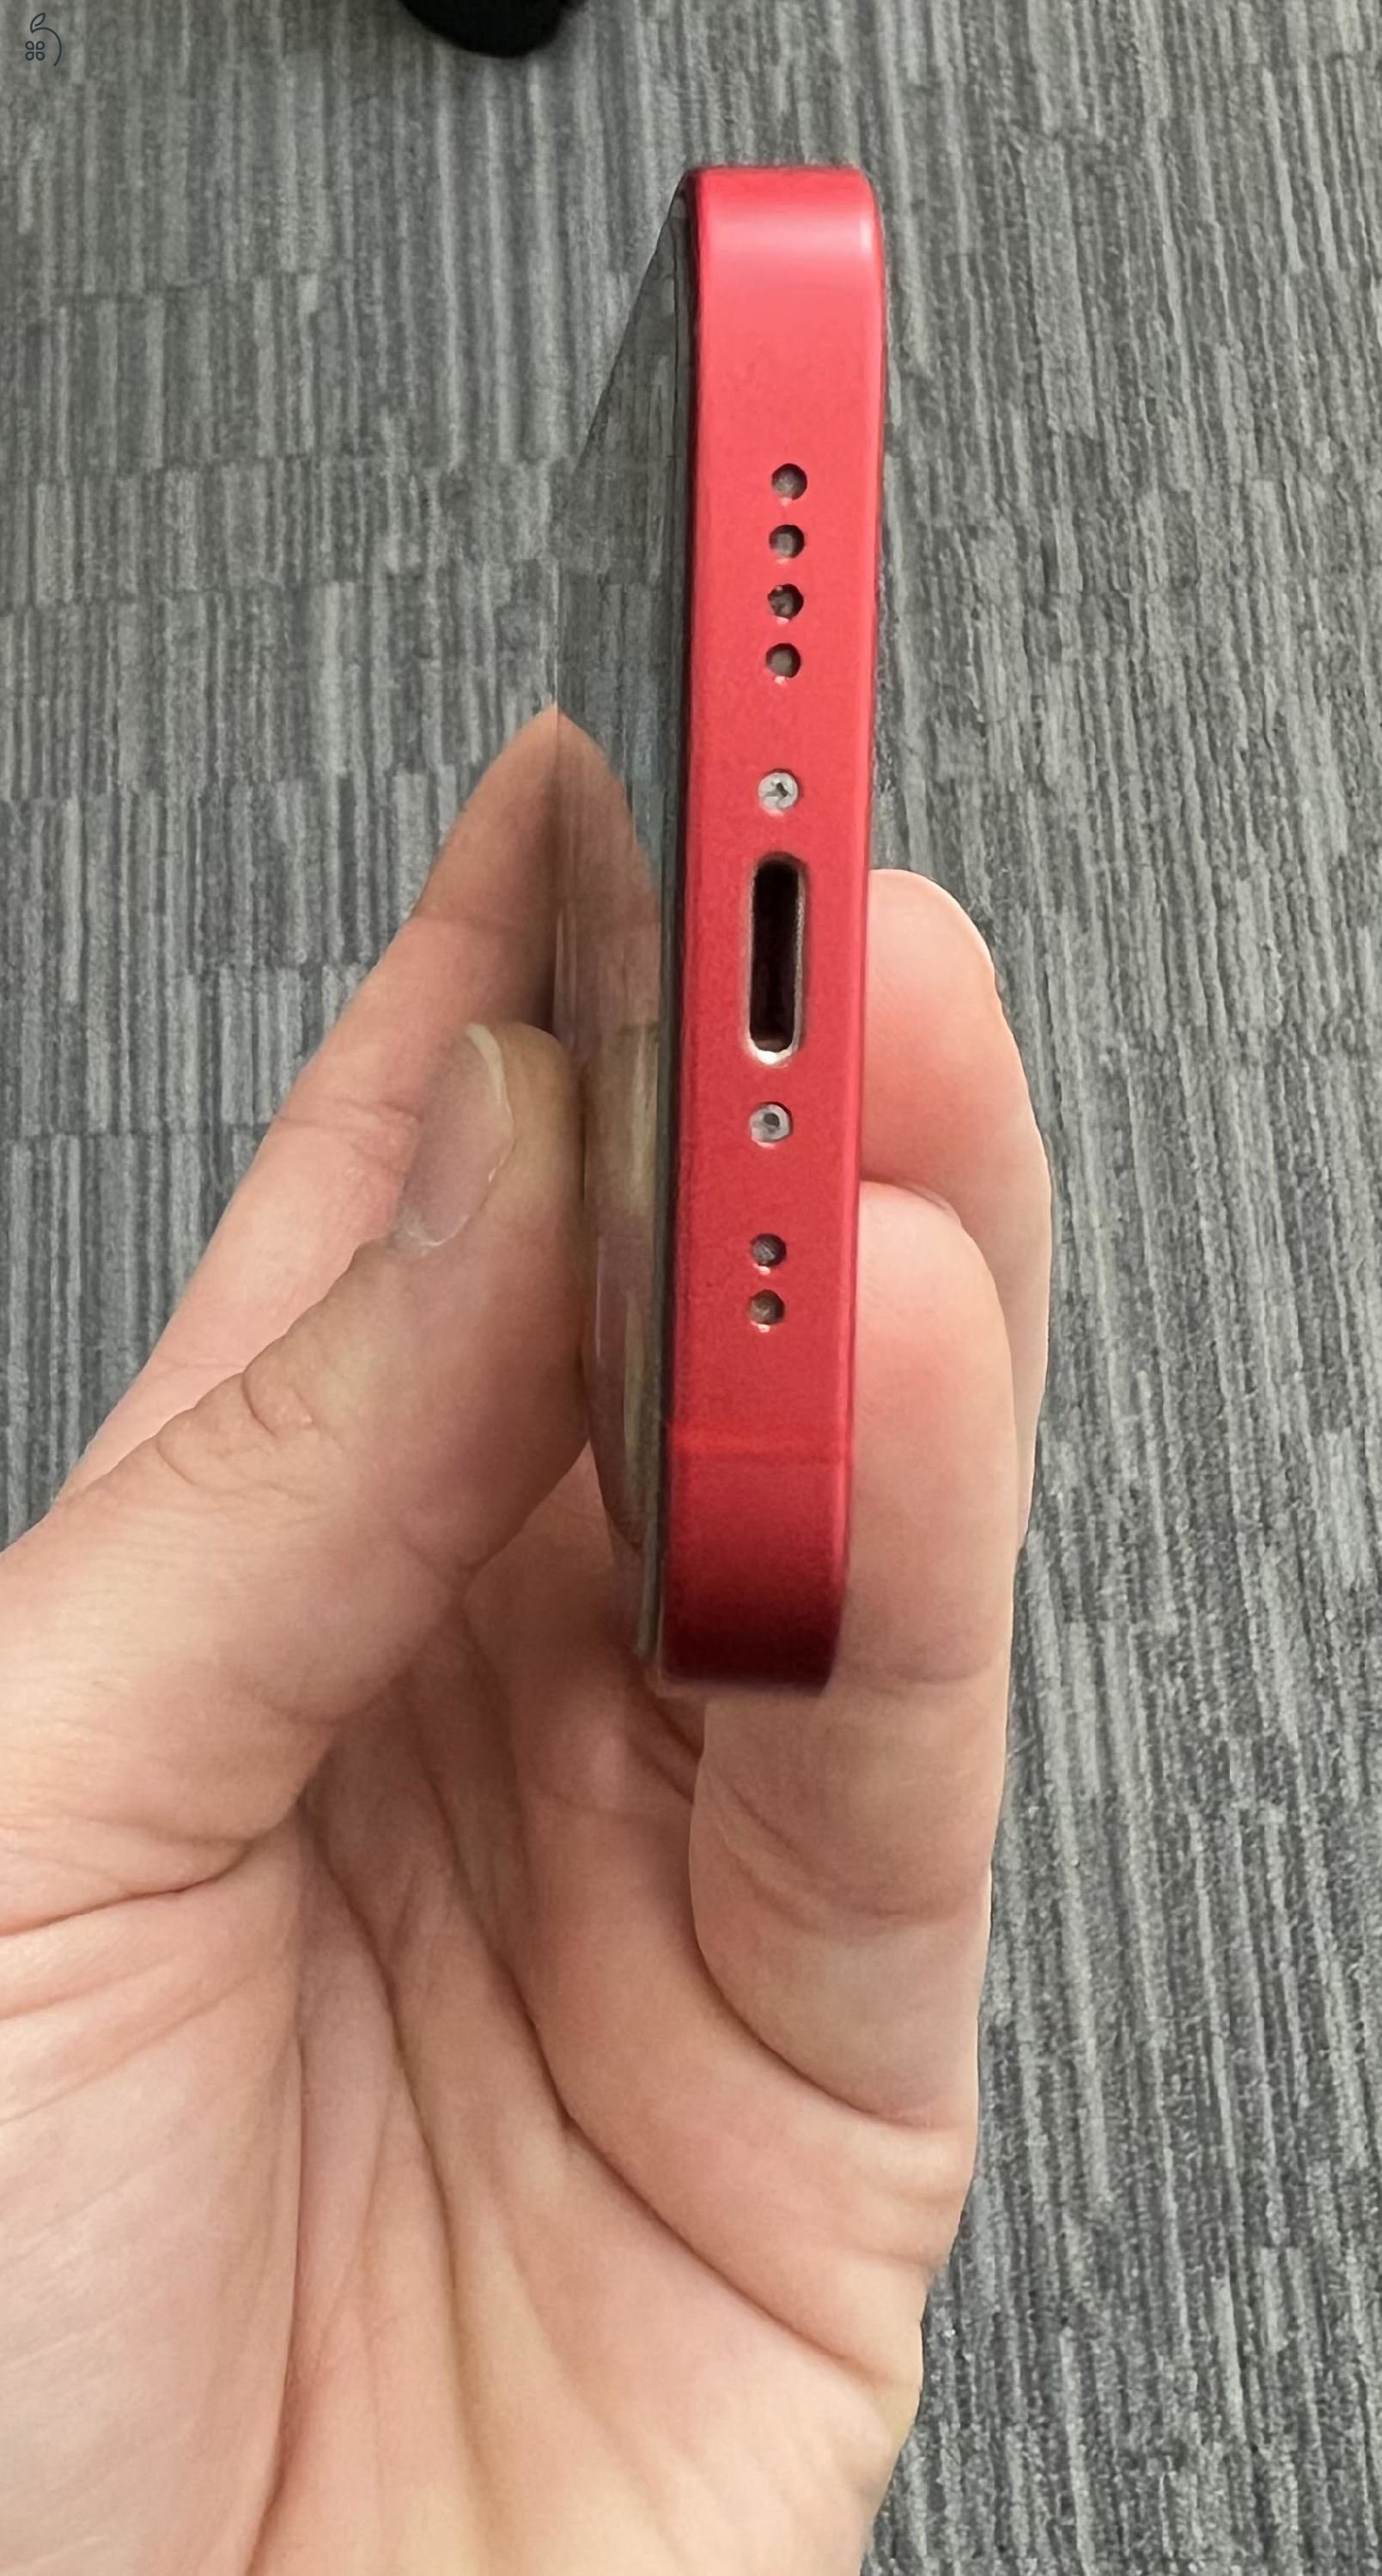 Iphone 12 mini 256 GB piros - kártyafüggetlen